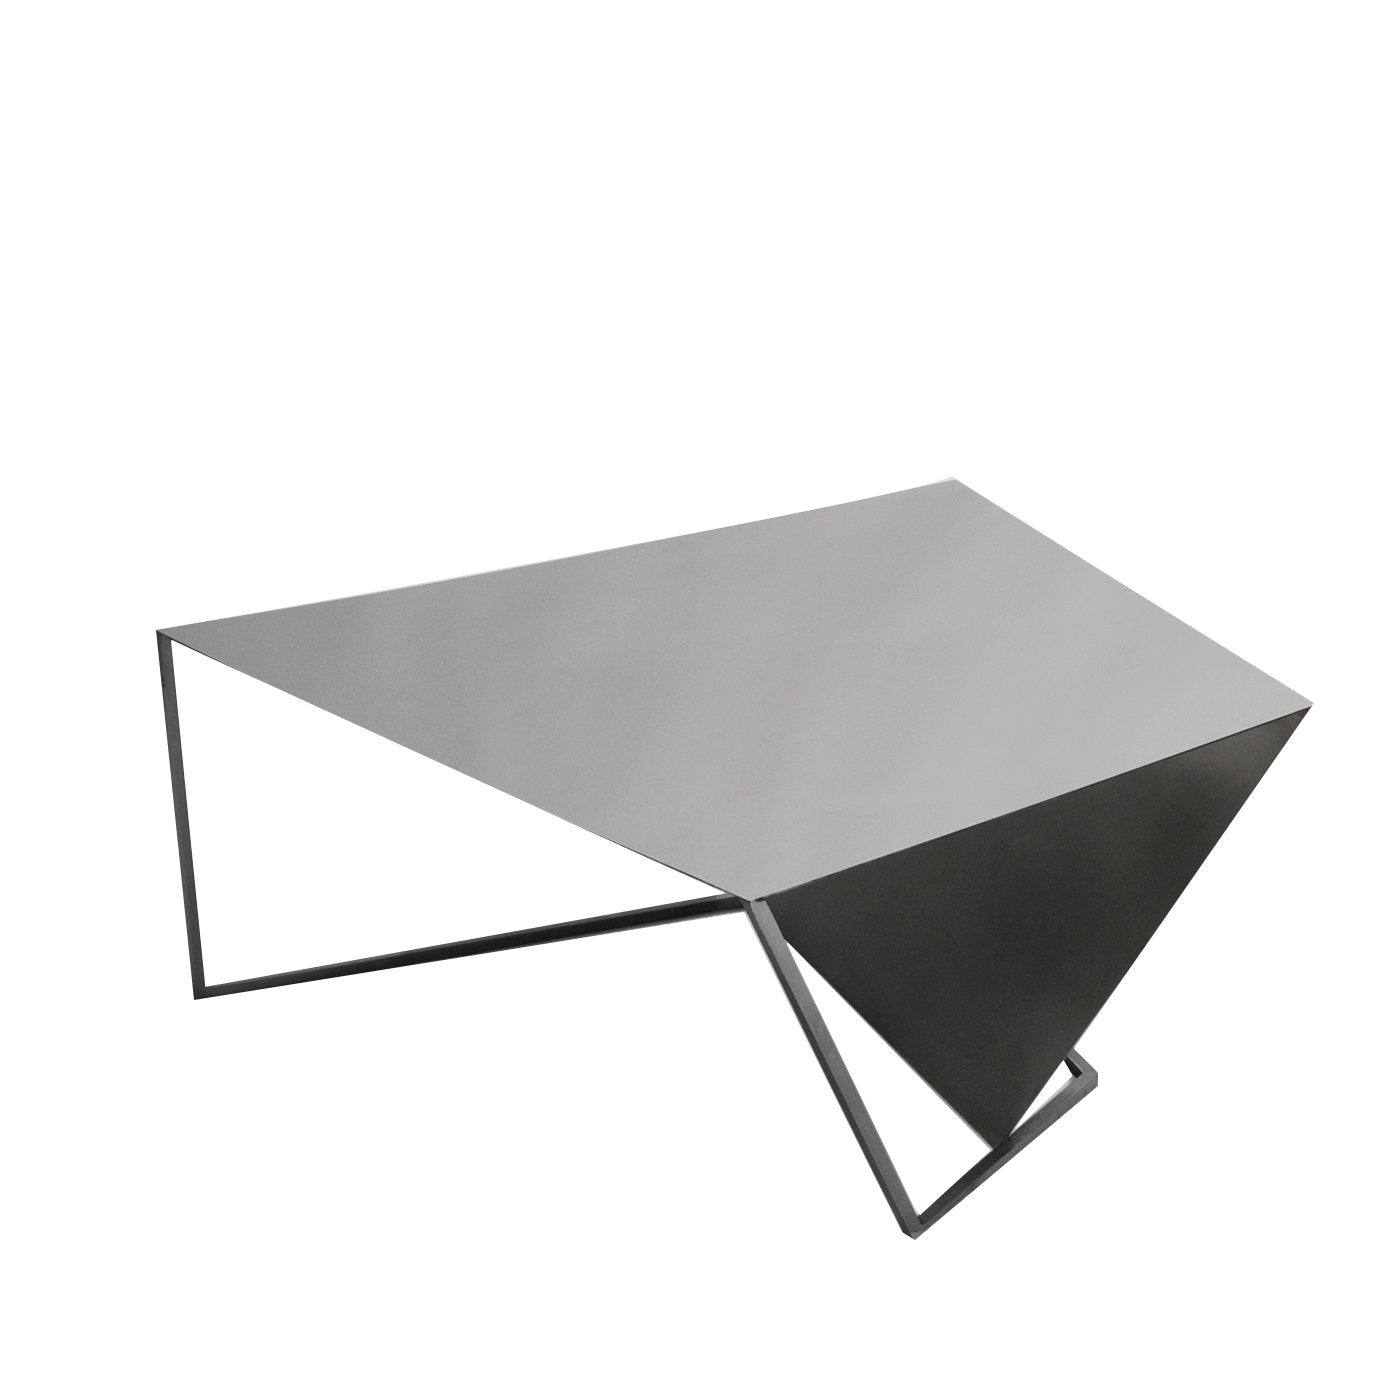 XY&Z Triangular Coffee Table - Alternative view 1